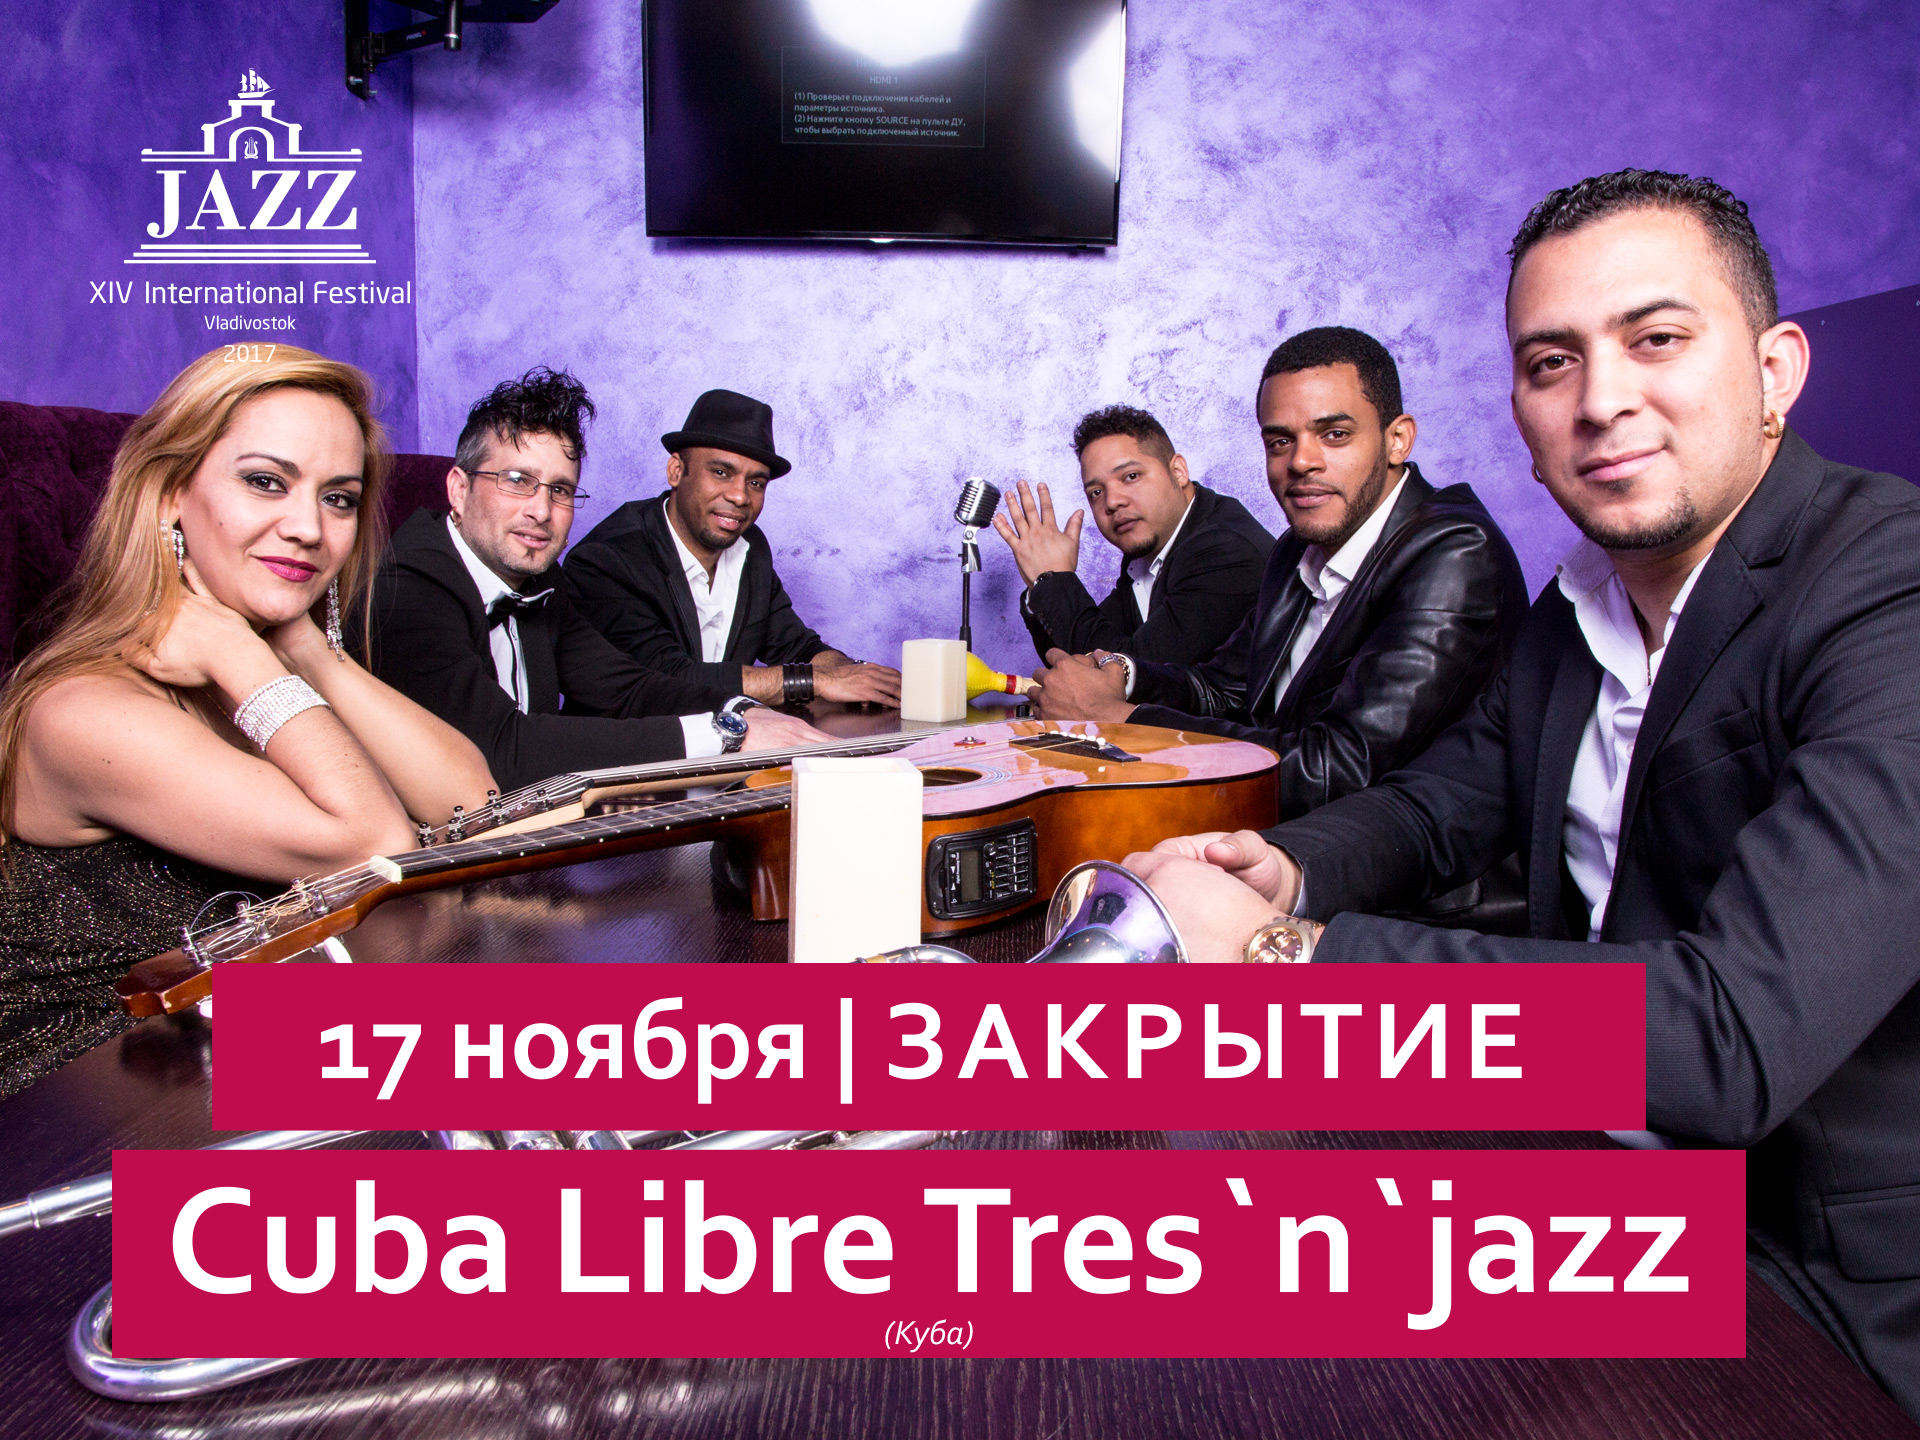 17 ноября / Большой зал / 19:00  ЗАКРЫТИЕ Cuba Libre Tres`n`jazz (Куба)